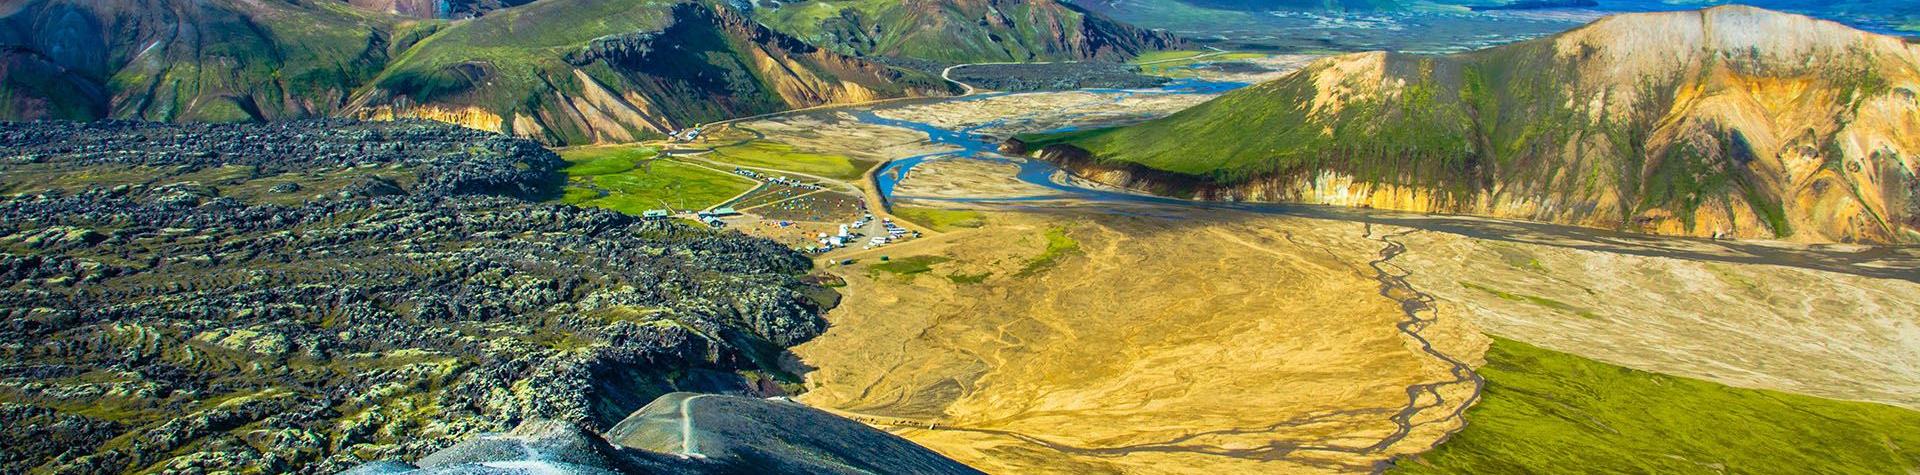 Fotturer og bad i varme kilder i det islandske høylandet